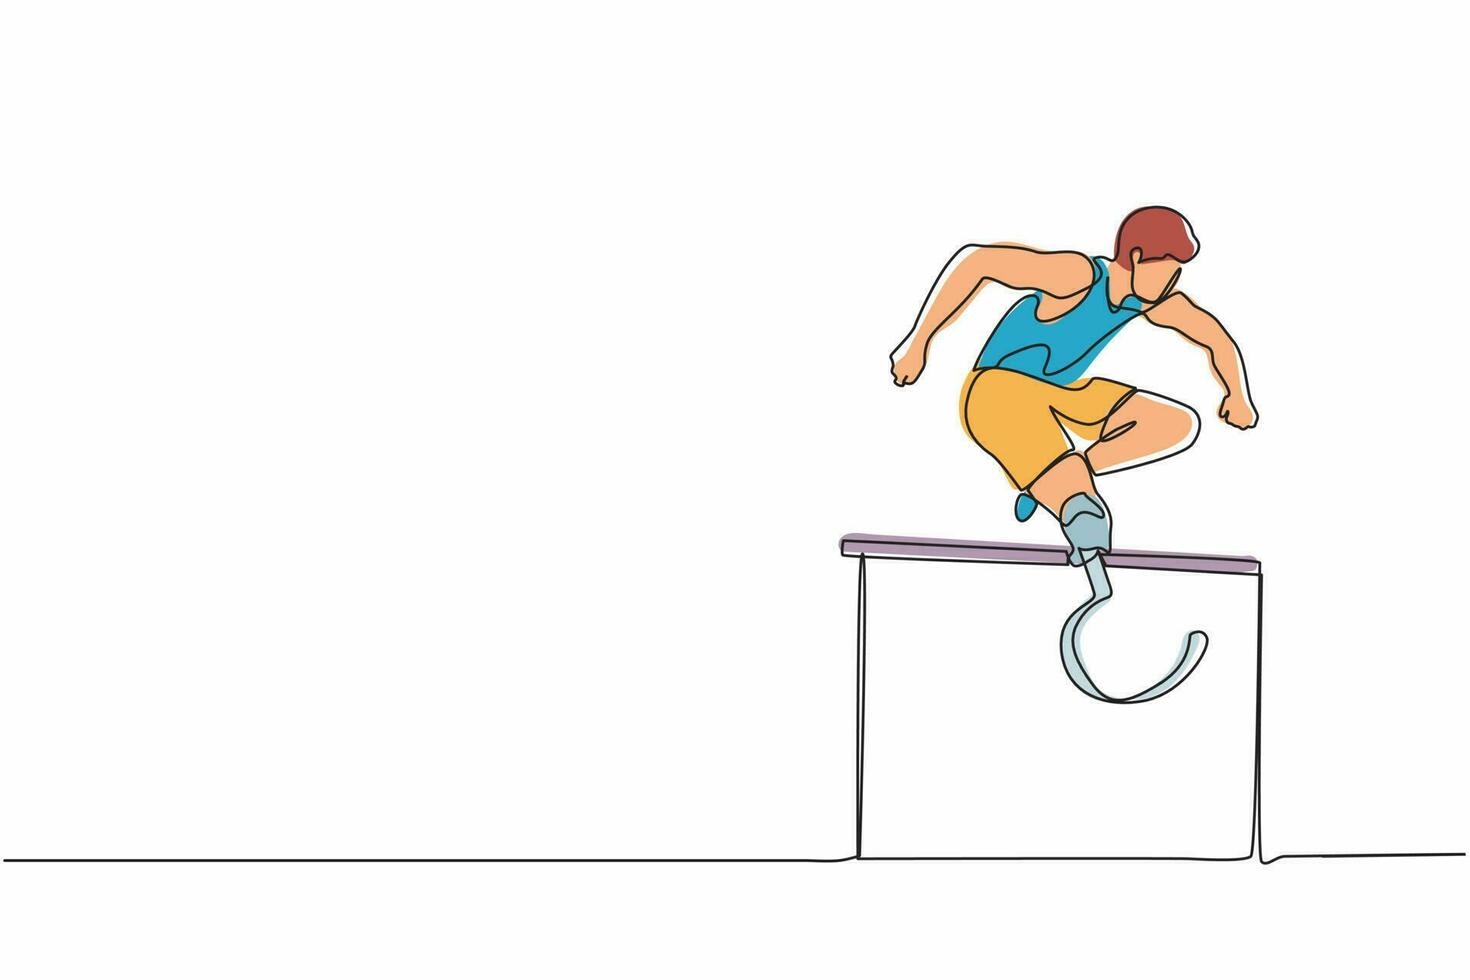 único desenho de linha contínua amputado jovem atleta masculino pulando, atropelando o obstáculo. jogos de deficiência com corrida de obstáculos. conceito de esporte de deficiência. uma linha desenhar ilustração em vetor design gráfico